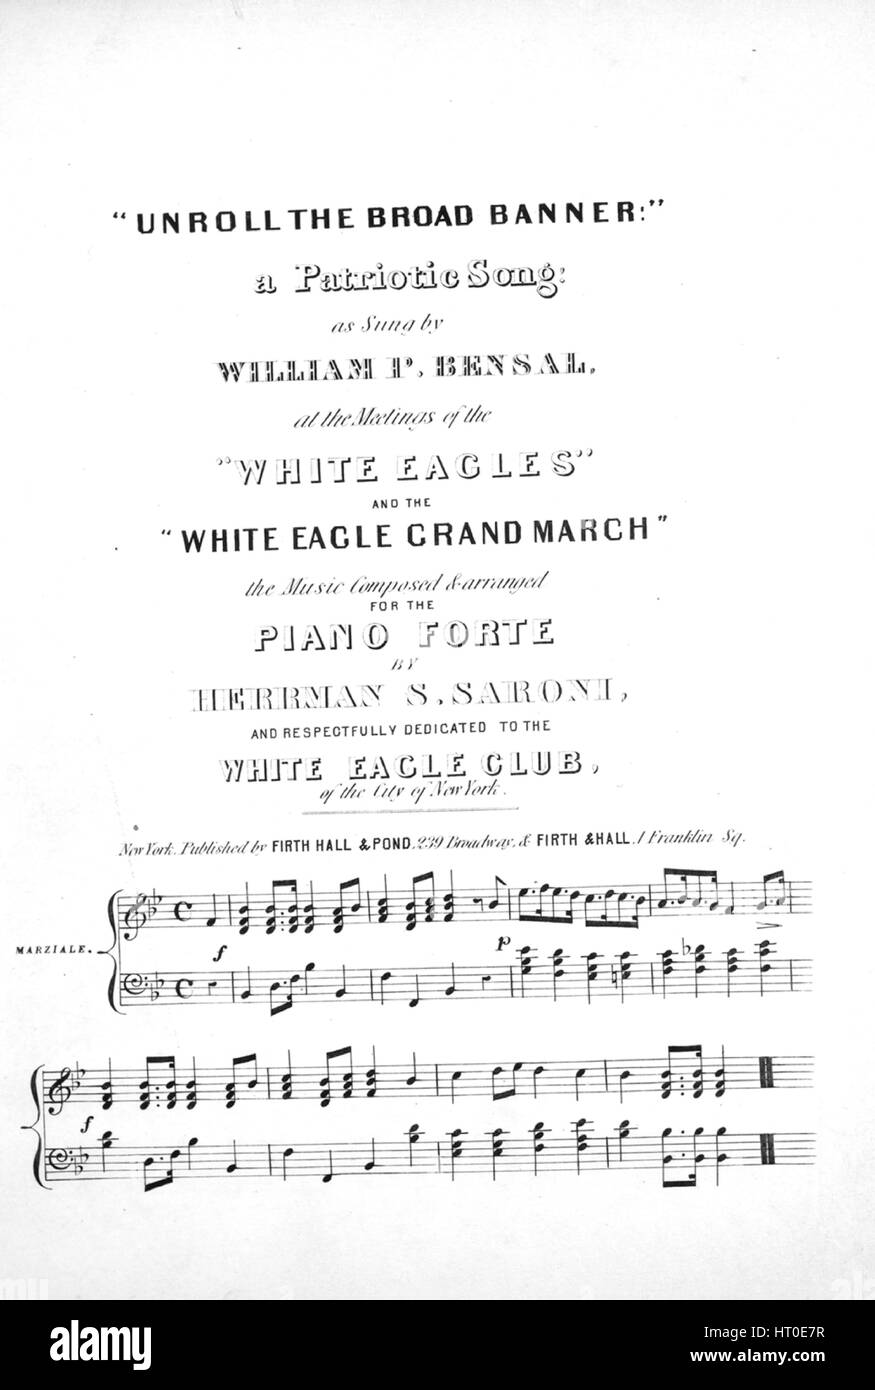 Imagen de cubierta de partituras de la canción '(1) 'desenrollar el amplio  Banner!' una canción patriótica; y (2) el 'Águila Blanca Grand marzo'', con  la autoría original notas leyendo "La música que